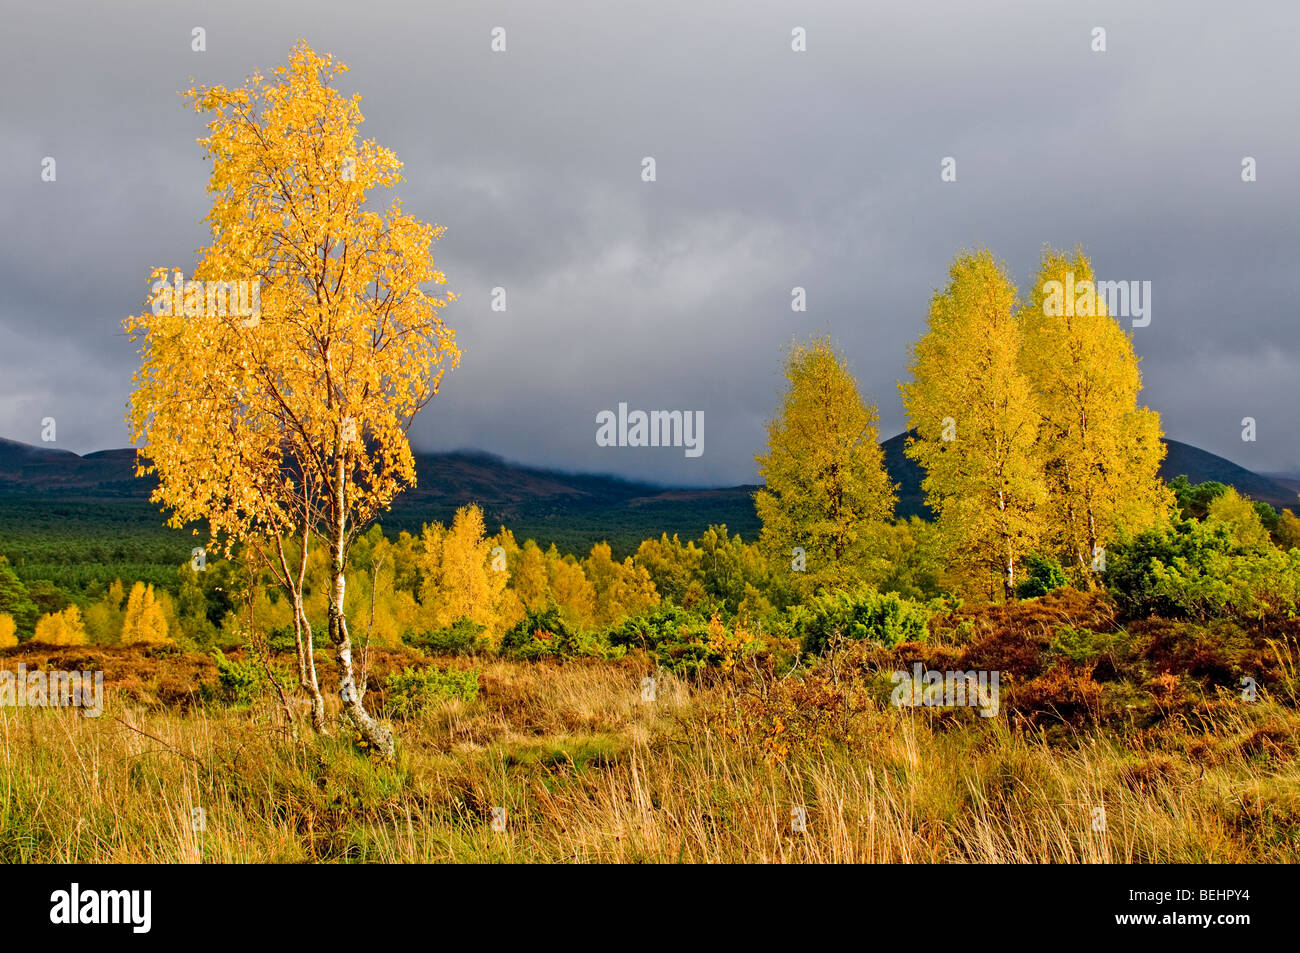 Les bouleaux sur l'automne dans le Parc National de Cairngorms Rothiemurchus Park Aviemore. Highlands écossais 5387 SCO Banque D'Images